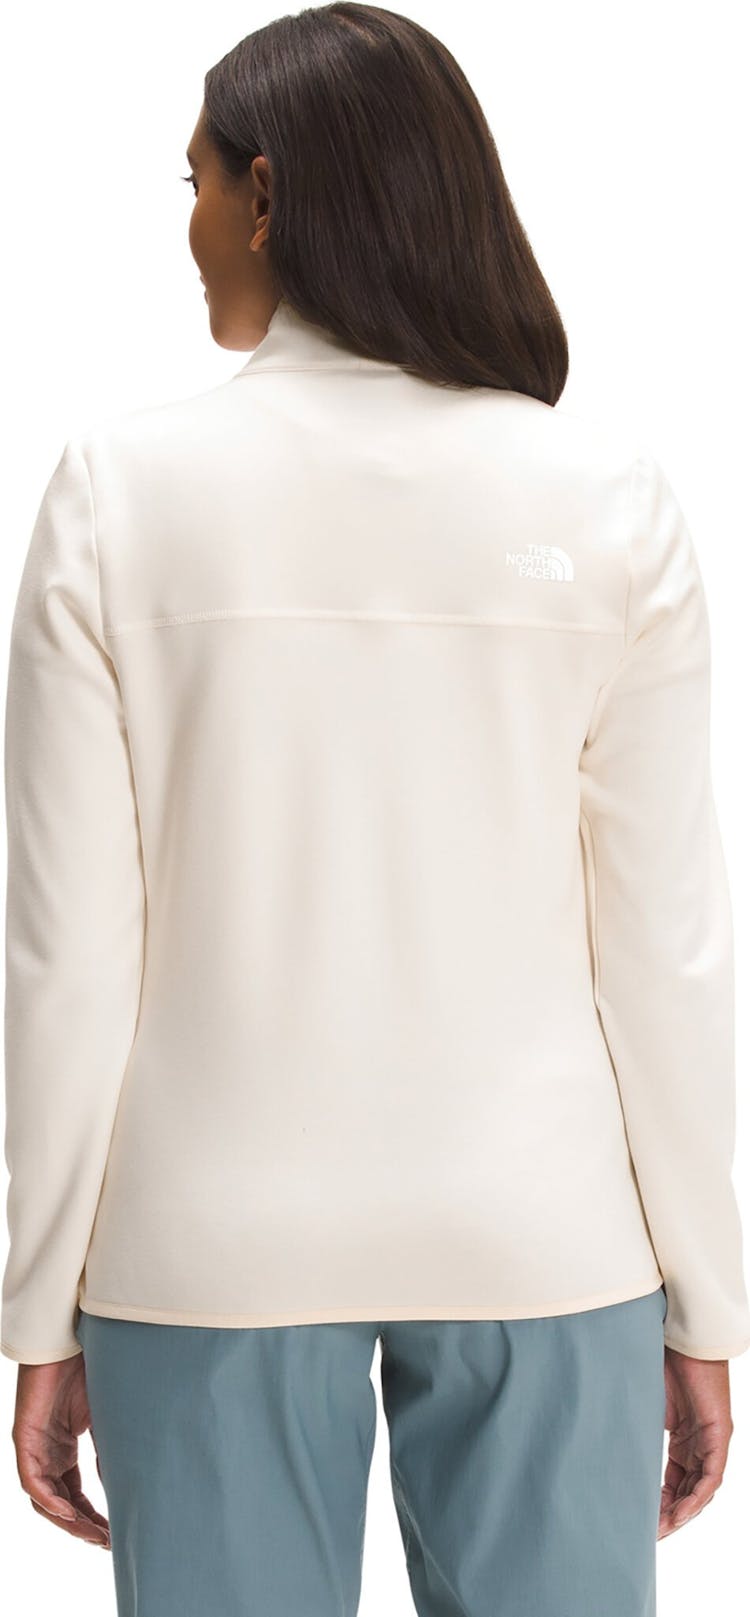 Product gallery image number 3 for product Canyonlands Full Zip Fleece Sweatshirt - Women's